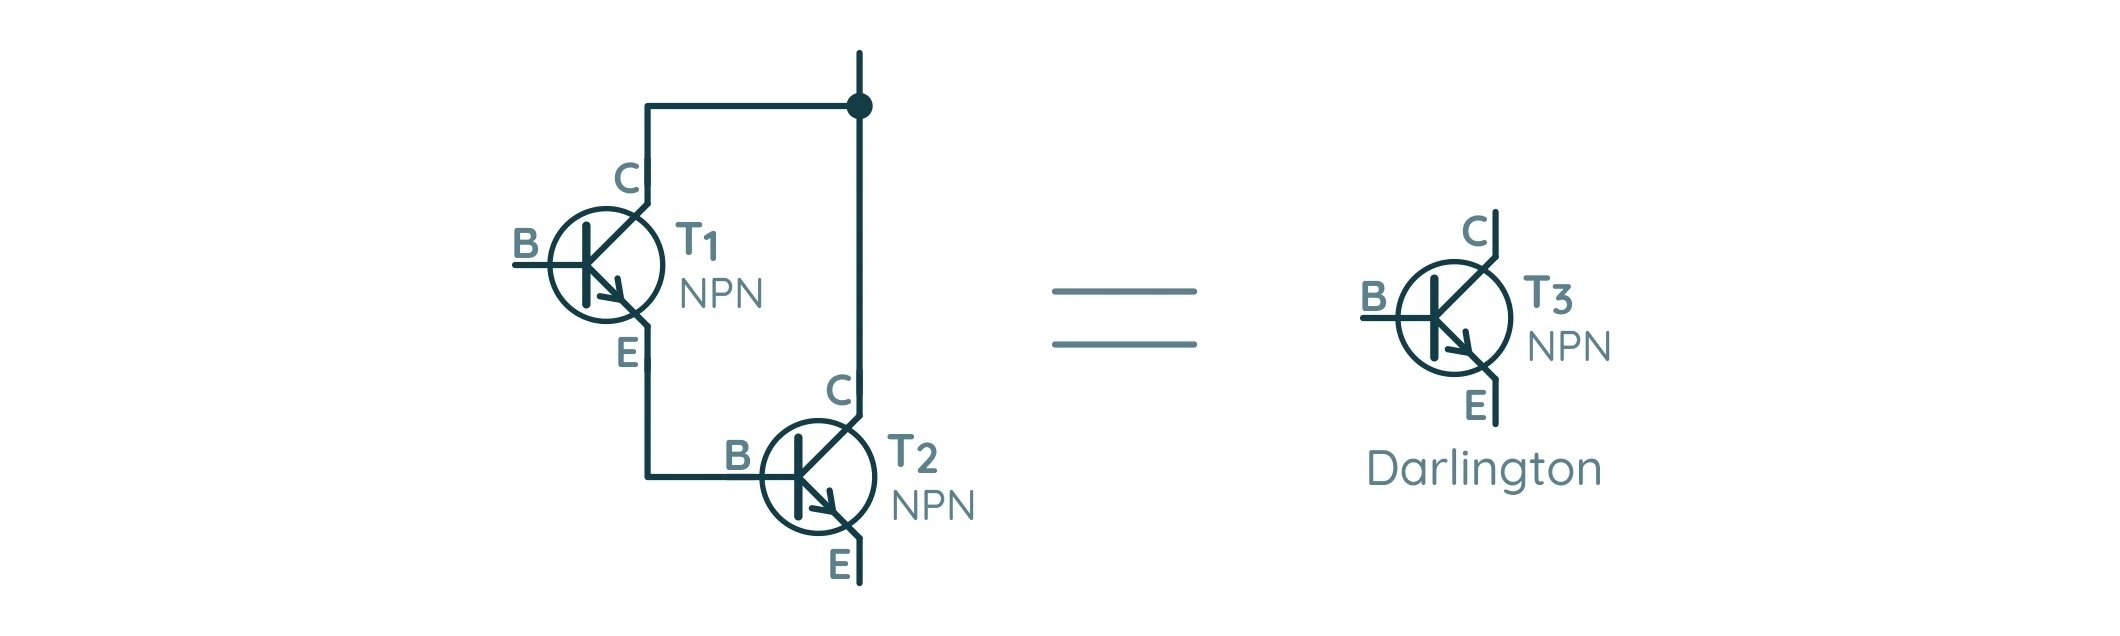 Схема подключения двух биполярных транзисторов в схему Дарлингтона